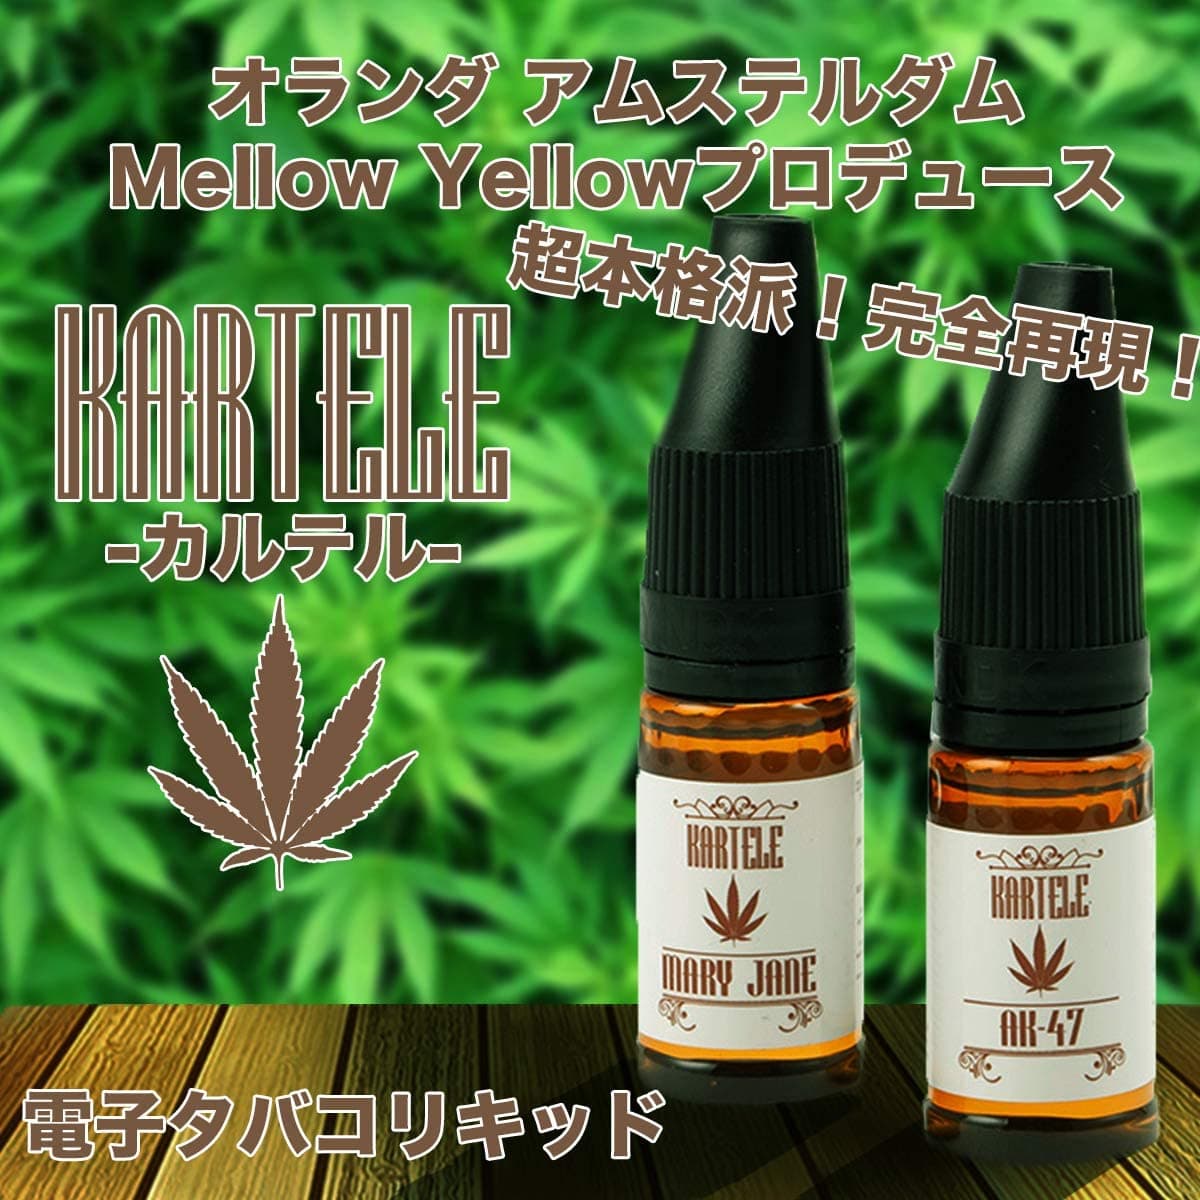 大麻味のリキッド吸い比べ 一番匂いや味が似てるのは Jointtech Marijuana Tora3 Flax Dvtch Space Cake Liablife リアブライフ